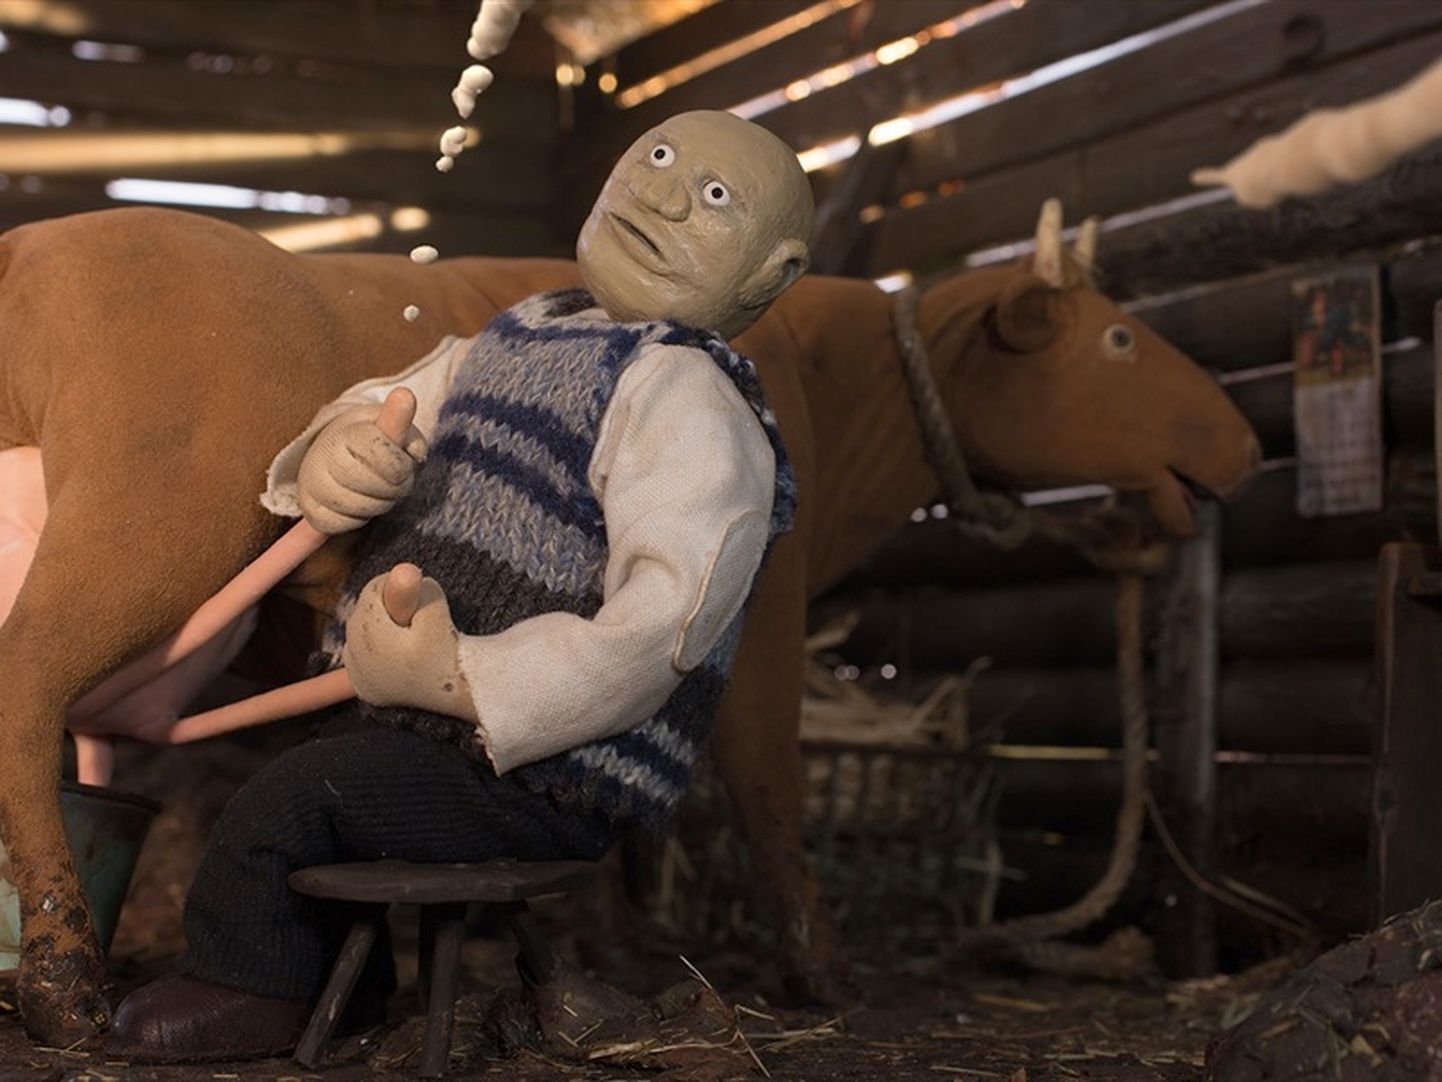 Eesti kinosid vallutavas "Vanamehe filmis" ajab peategelane lastelastega põgenenud lehma taga.